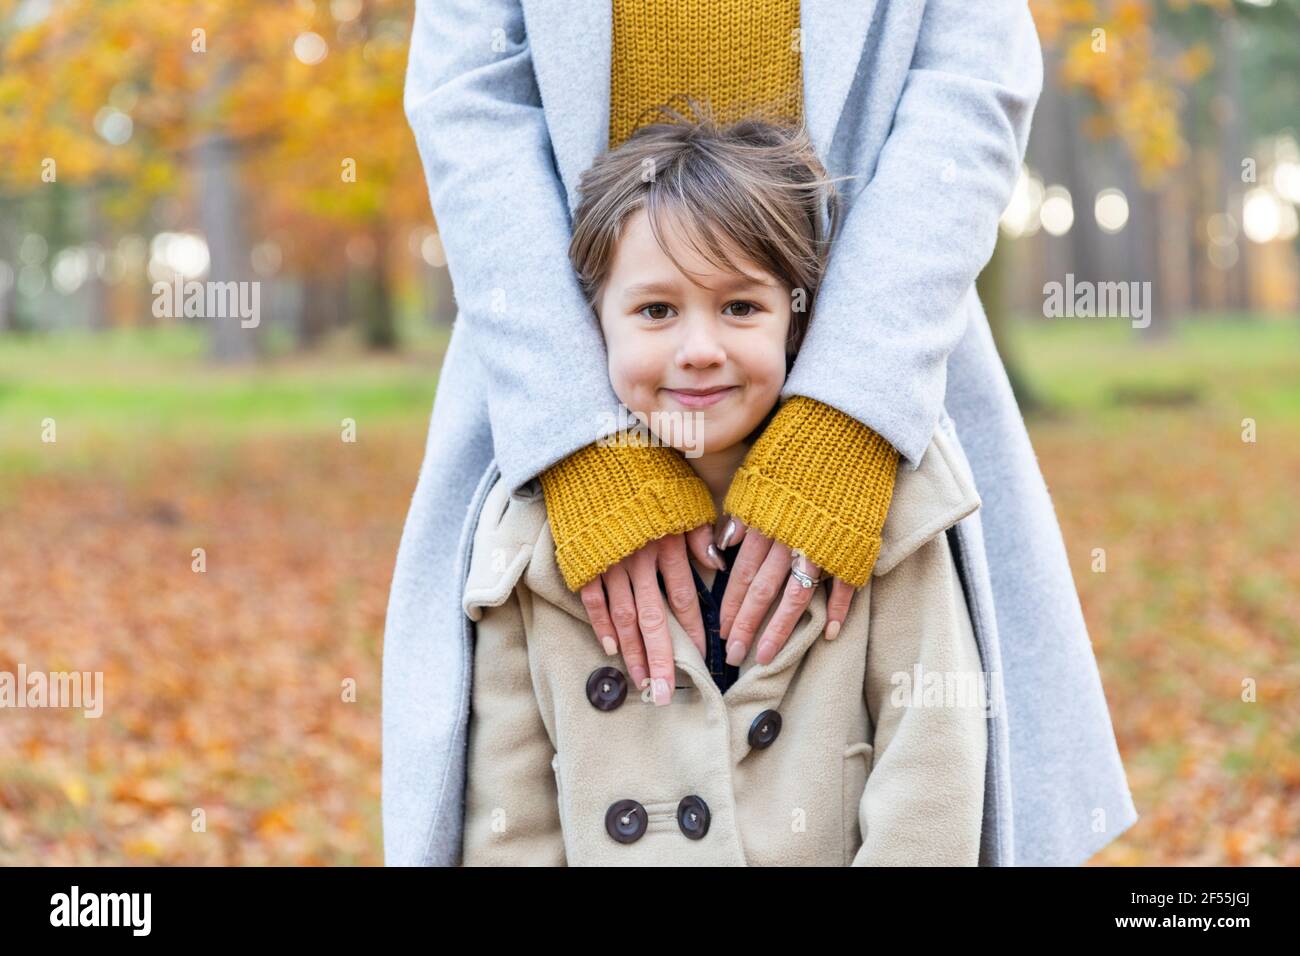 Fille souriante en se tenant debout avec une femme en forêt Banque D'Images